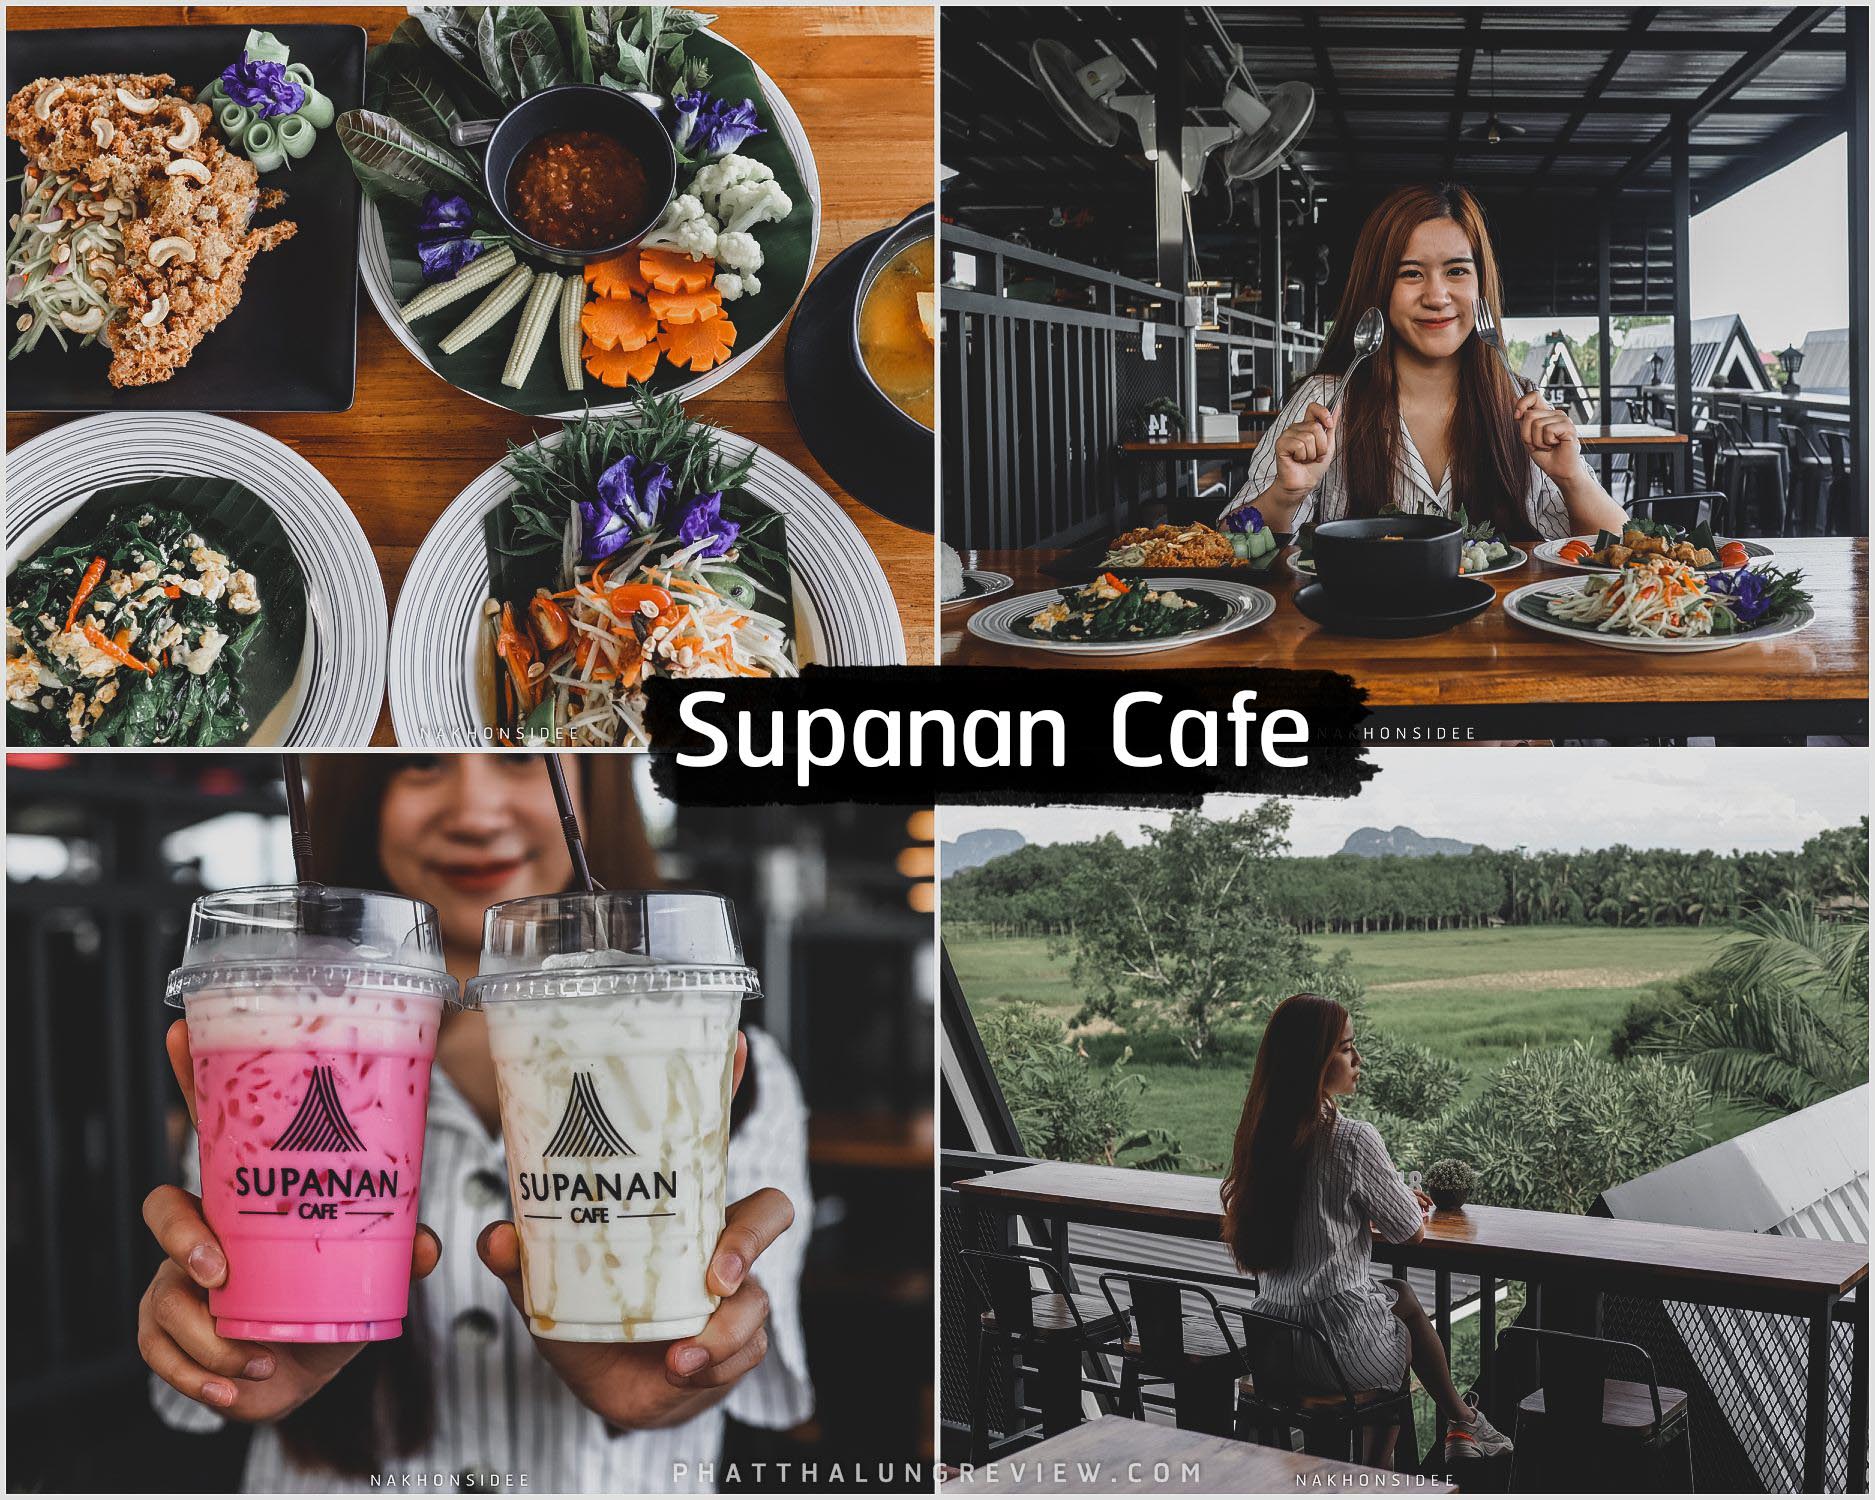 Supanan-Cafe-คาเฟ่พัทลุง จัดได้ว่าเด็ดเป็นคาเฟ่เปิดใหม่ล่าสุด-2022-พัทลุง-อาหารอร่อย-วิวดีย์-น้ำพริกเด็ดมวากก-เป็นทั้งร้านอาหารและคาเฟ่ครับ พัทลุง,ที่เที่ยว,จุดเช็คอิน,คาเฟ่,ของกิน,ที่พัก,รีสอร์ท